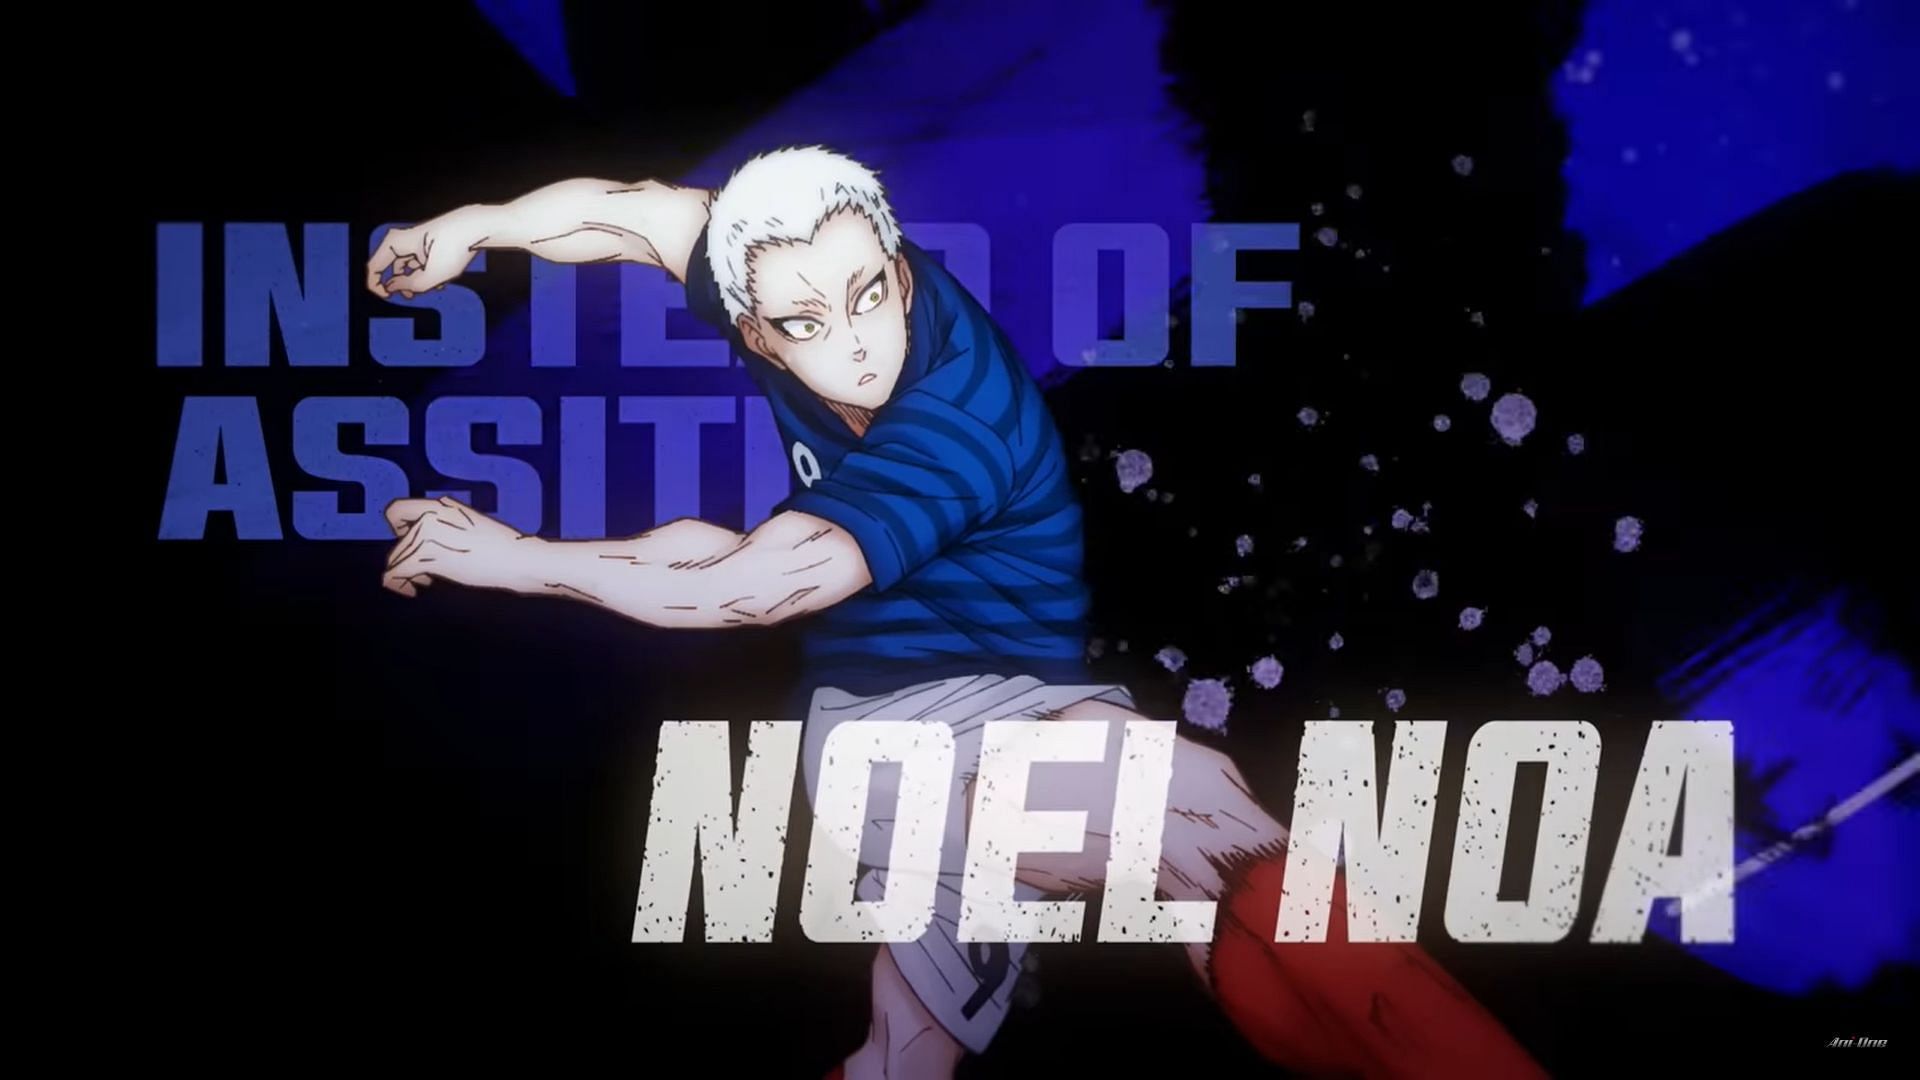 Noel Noa as seen in the Blue Lock anime